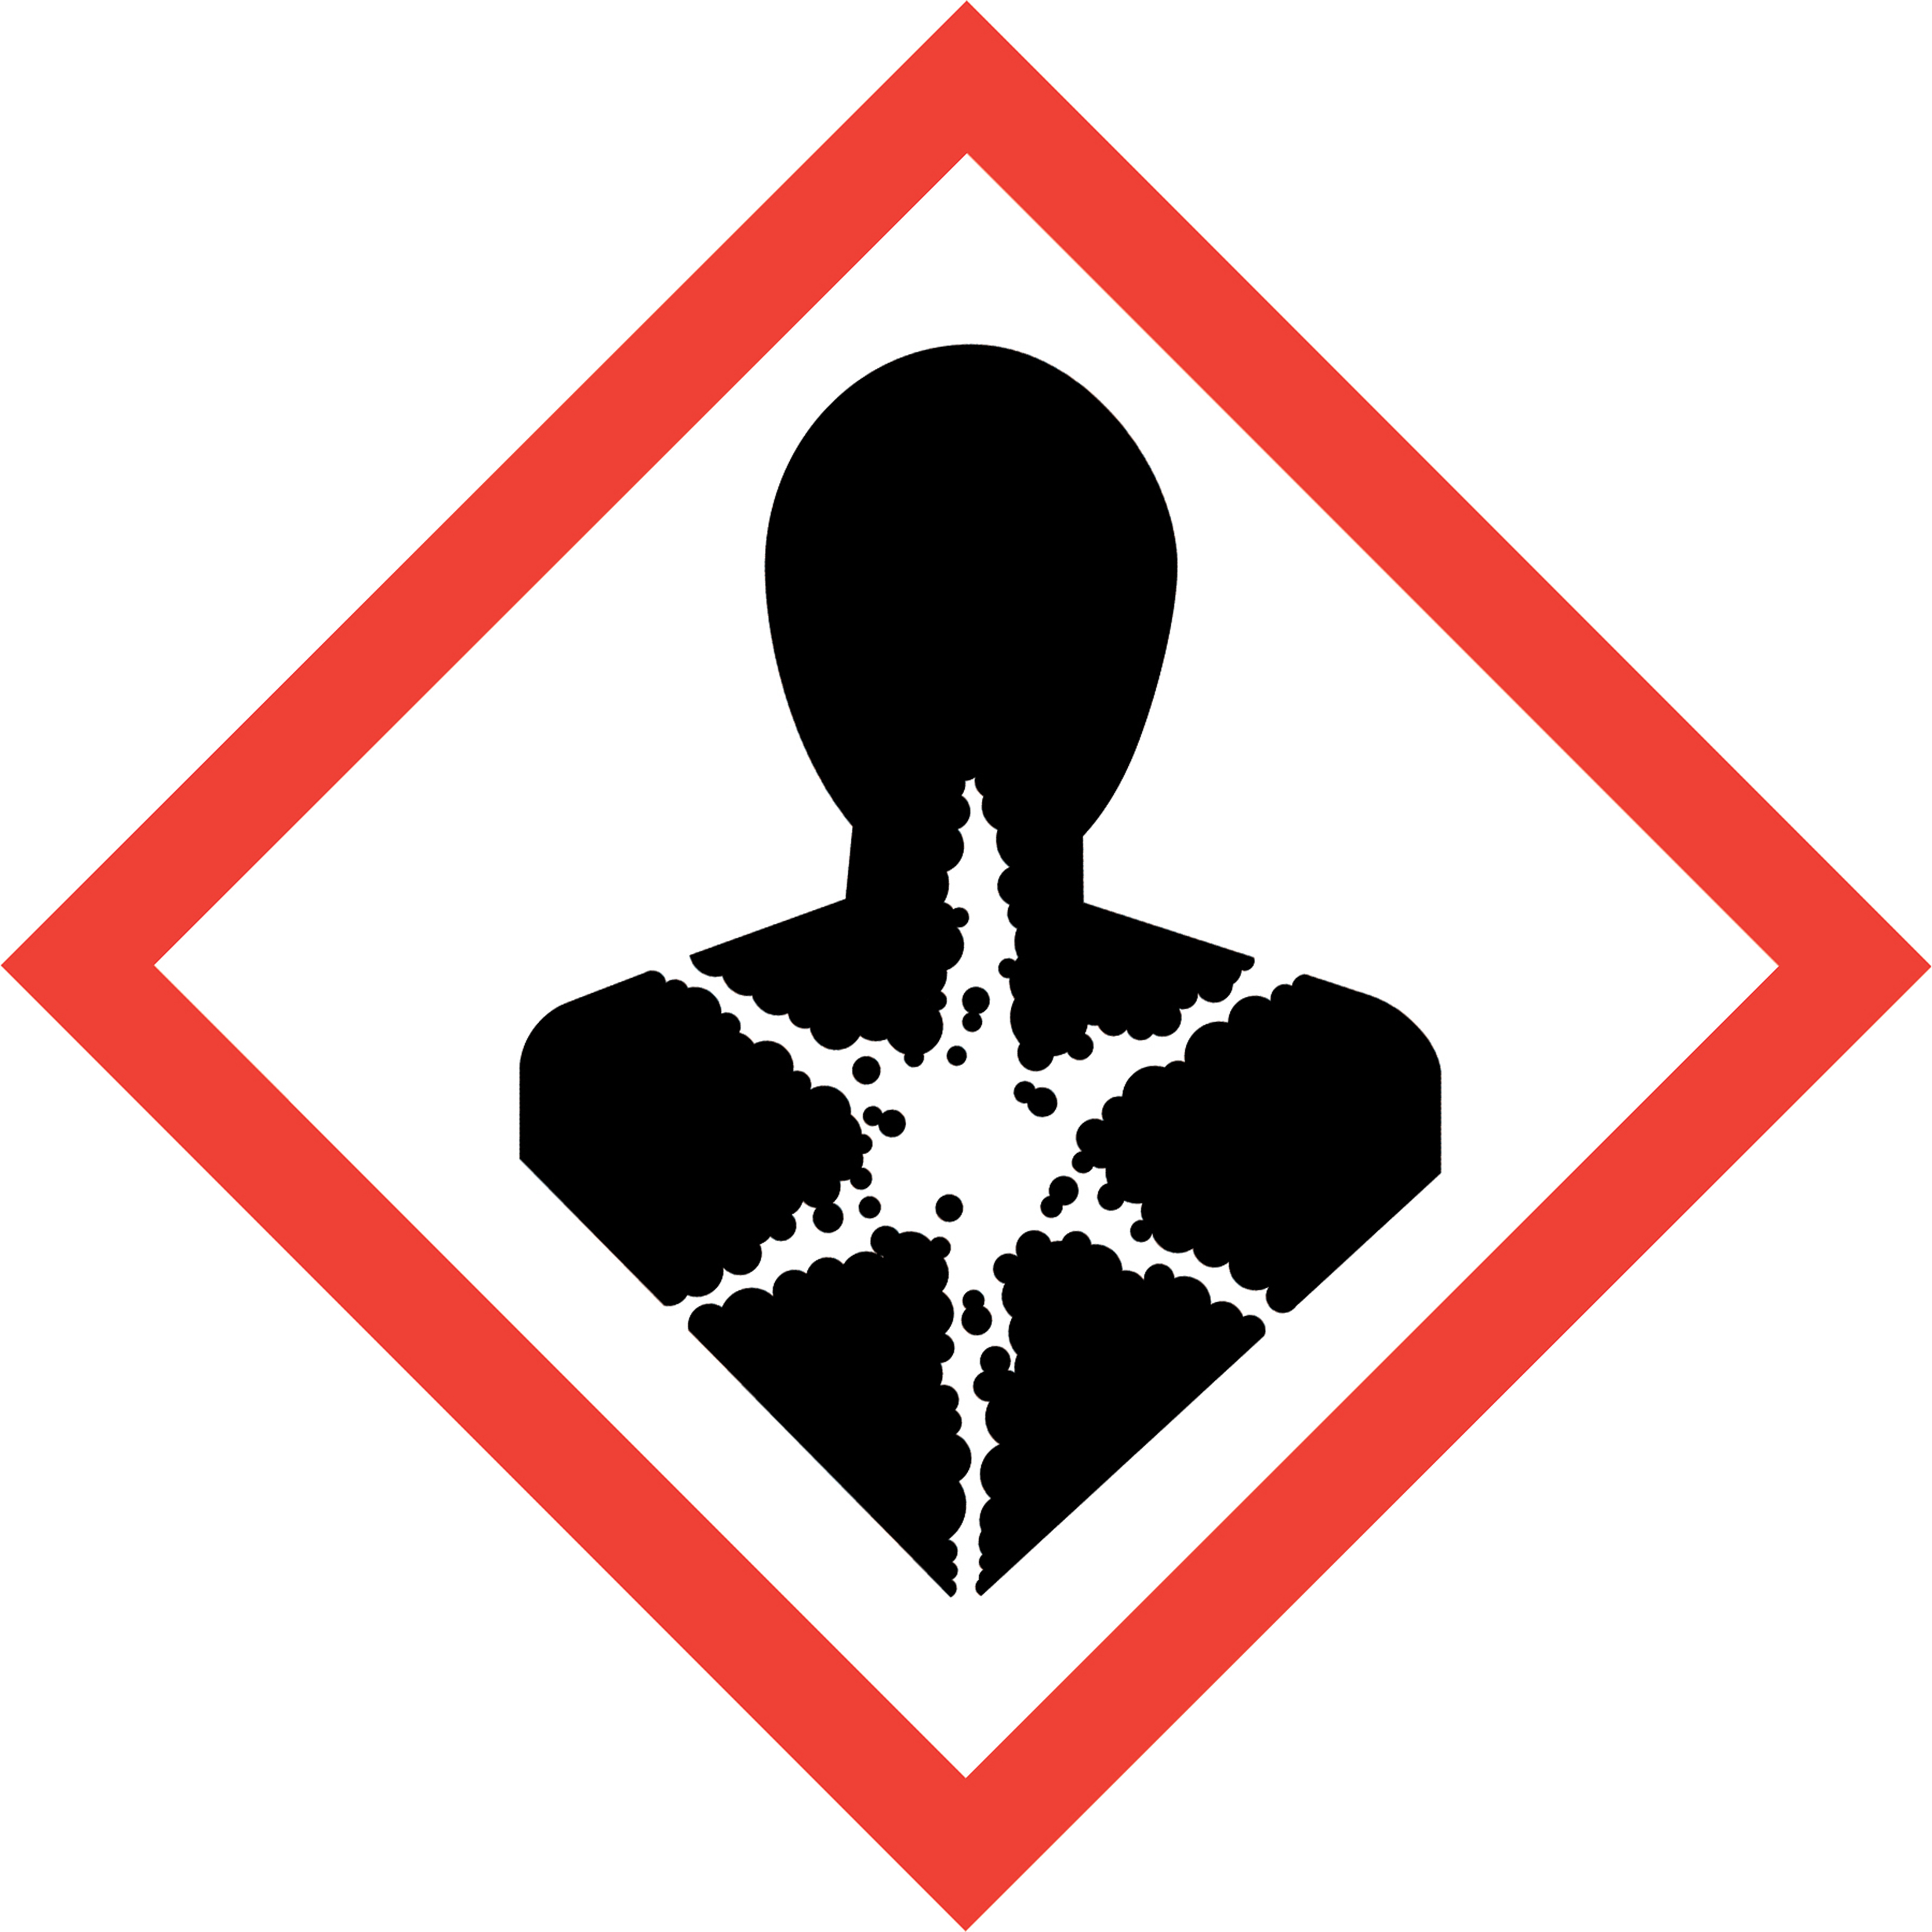 Schwarzes Symbol einer Person die auf Brustkorb sternartige weiße Linien mit Punkten hat von rotem Quadrat eingegrenzt auf weißem Hintergrund